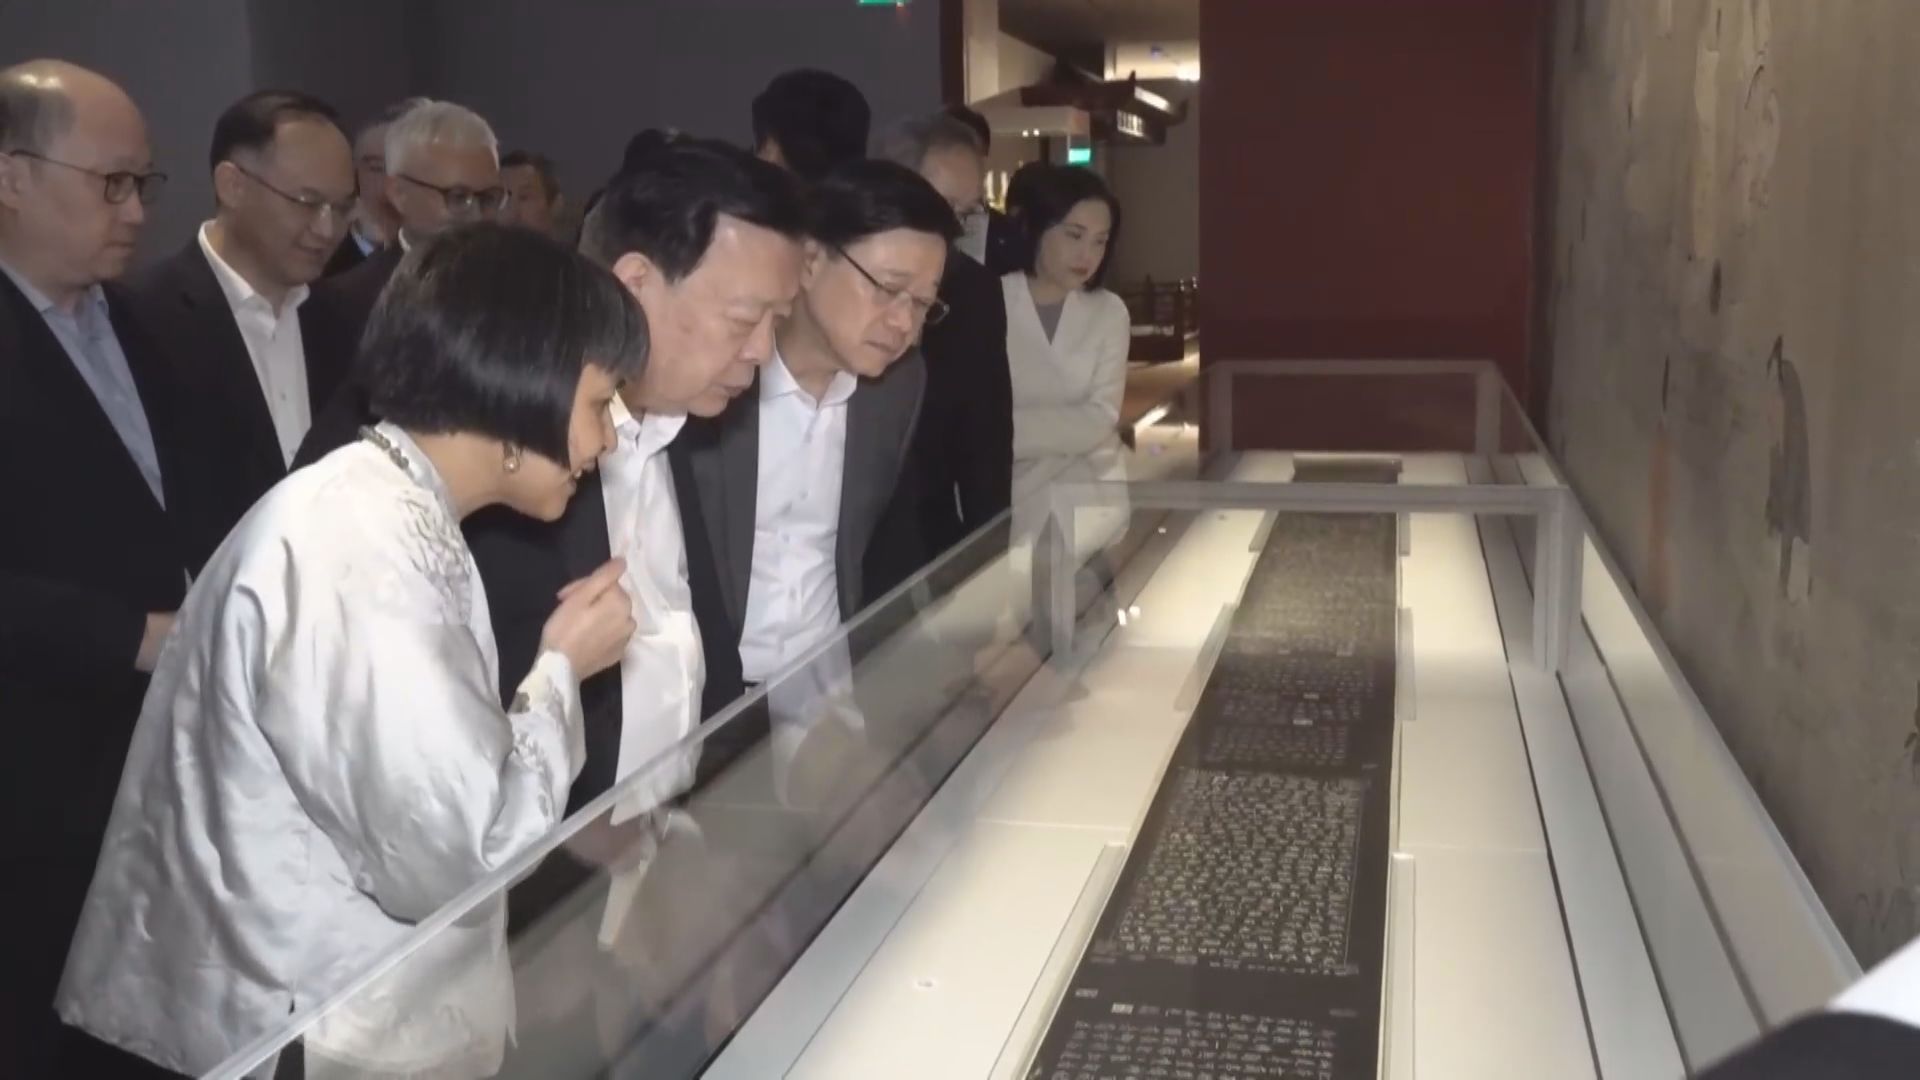 夏寶龍訪故宮博物館與青年交流 特首辦會見經濟學者